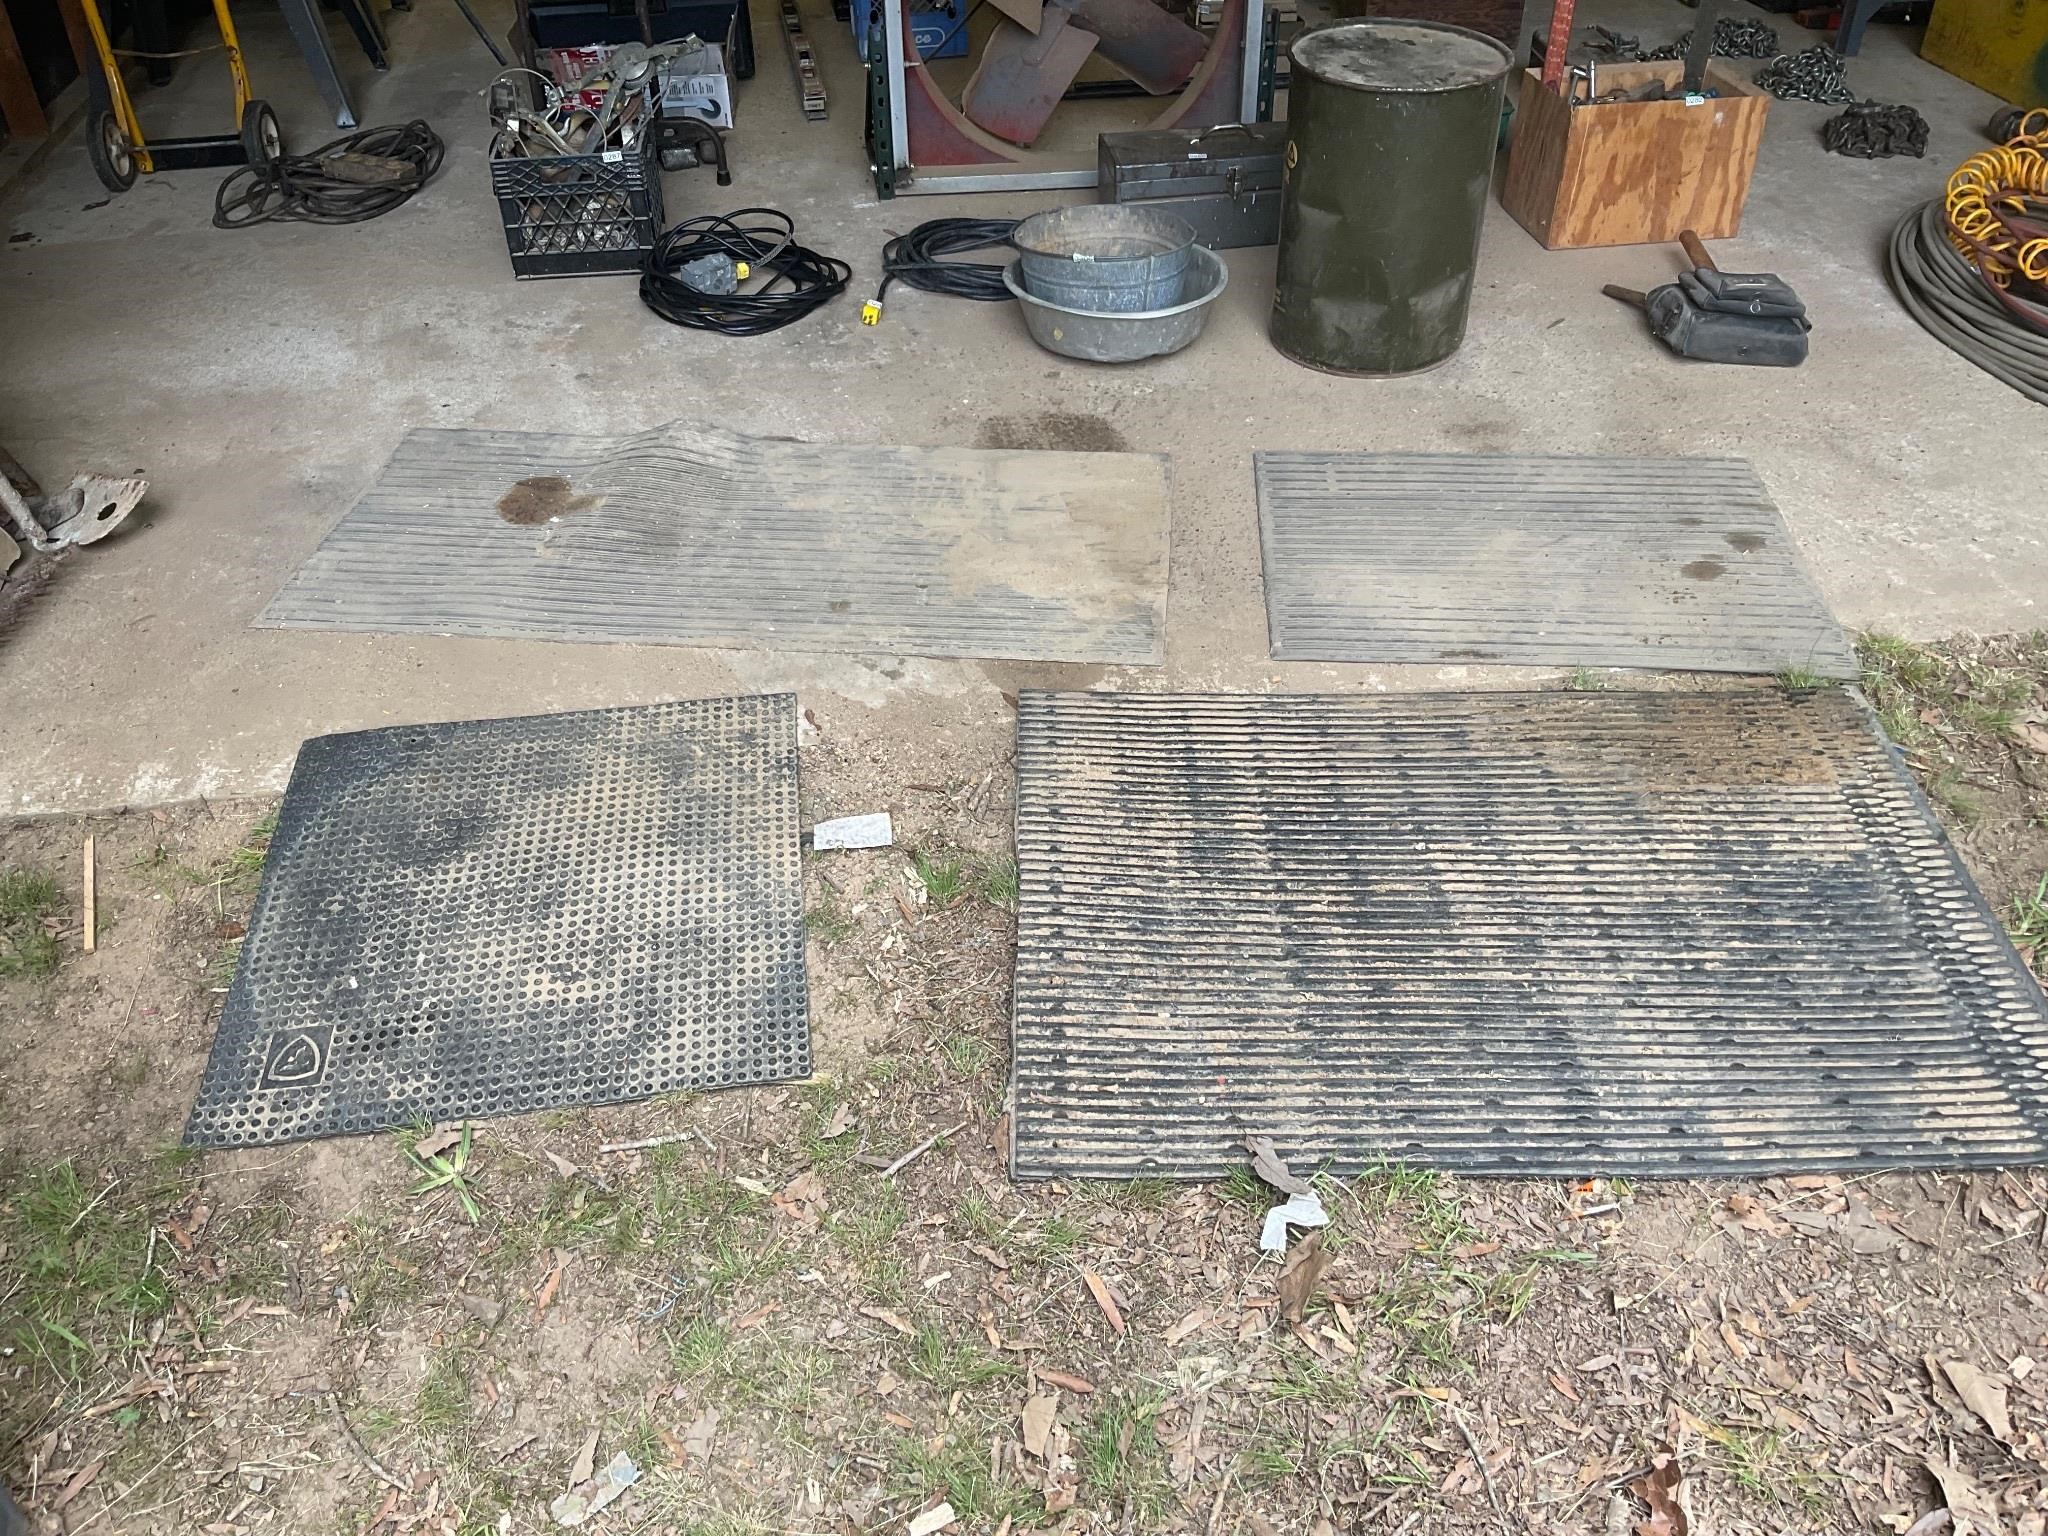 4- rubber work mats